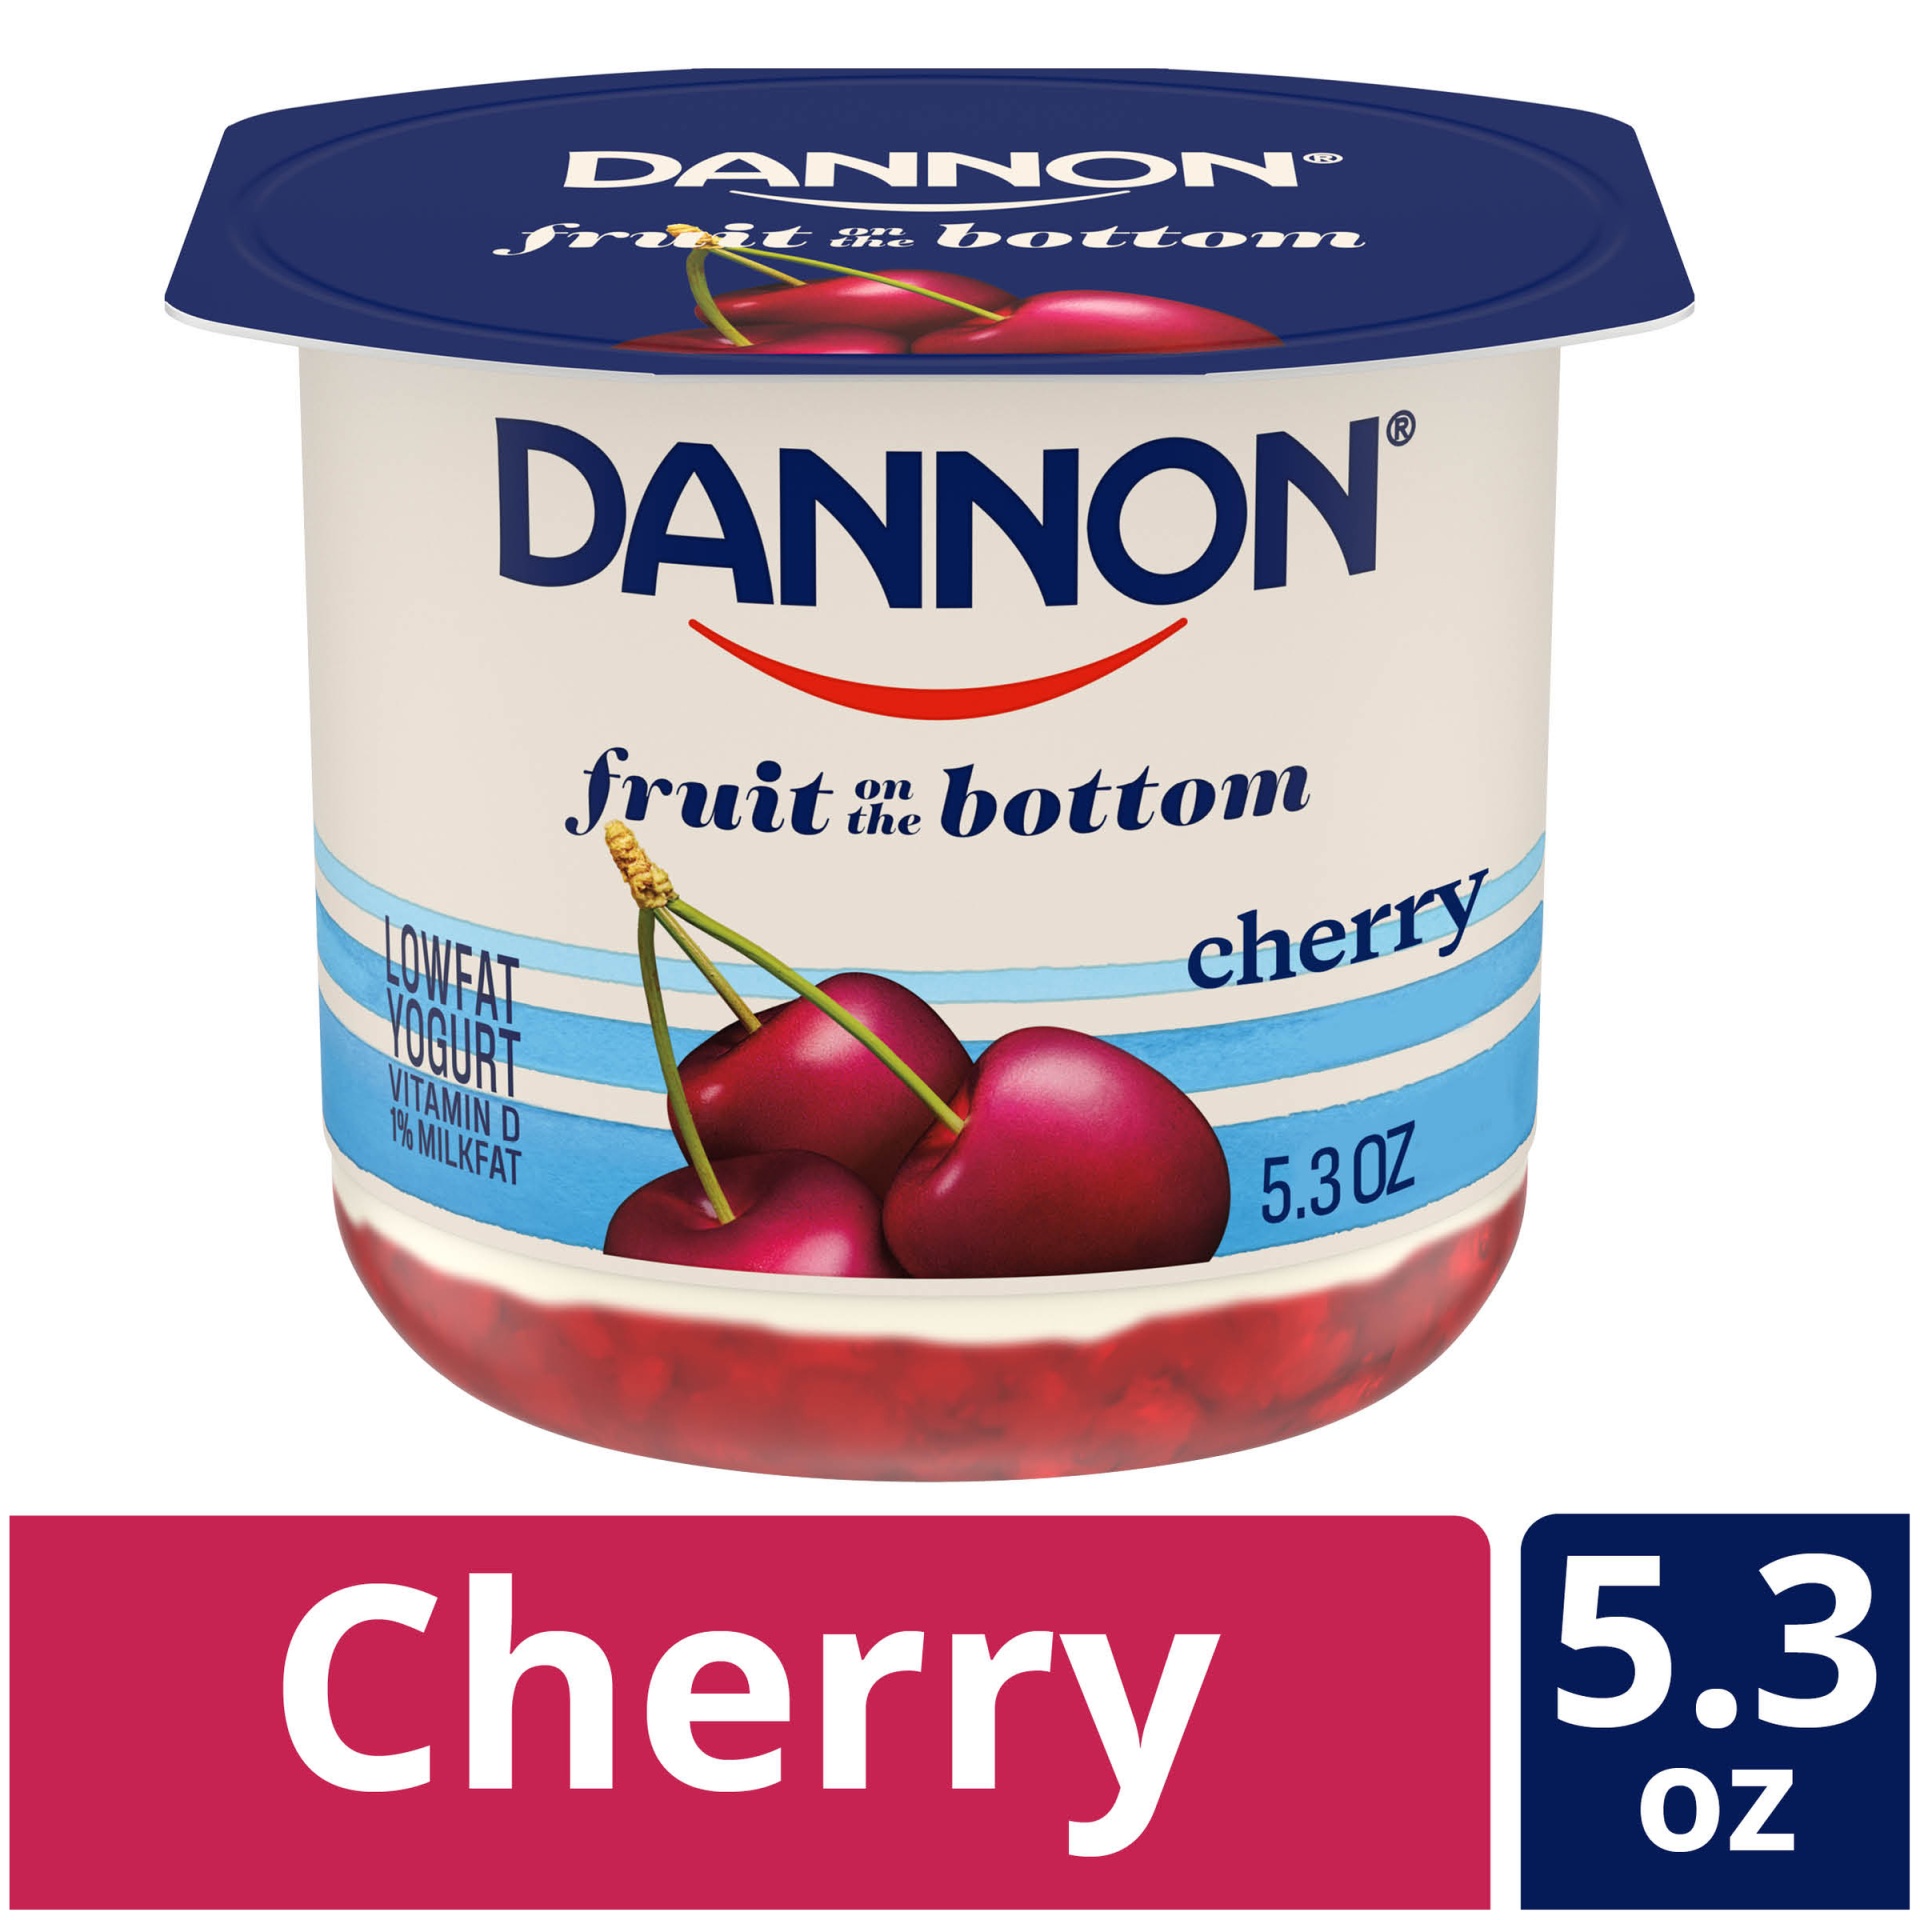 slide 1 of 7, Dannon Fruit on the Bottom Cherry Yogurt, 5.3 oz